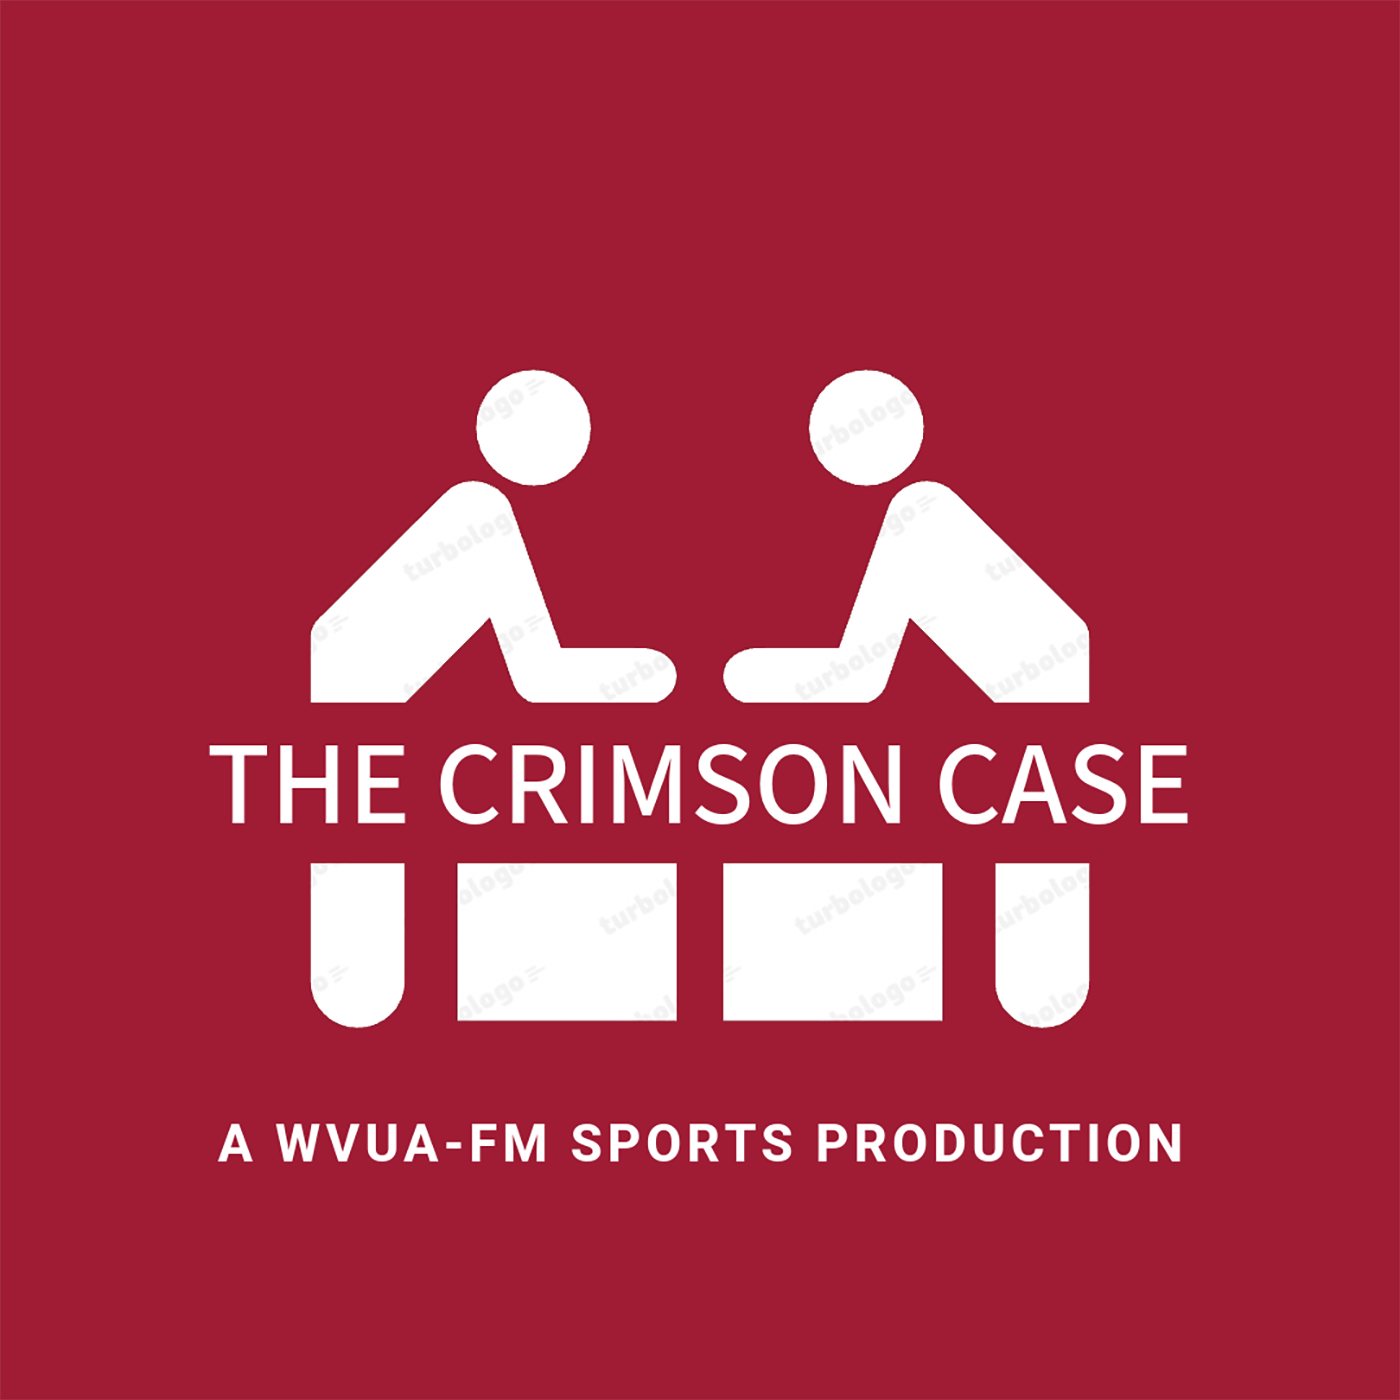 The Crimson Case: A WVUA-FM SPORTS PRODUCTION